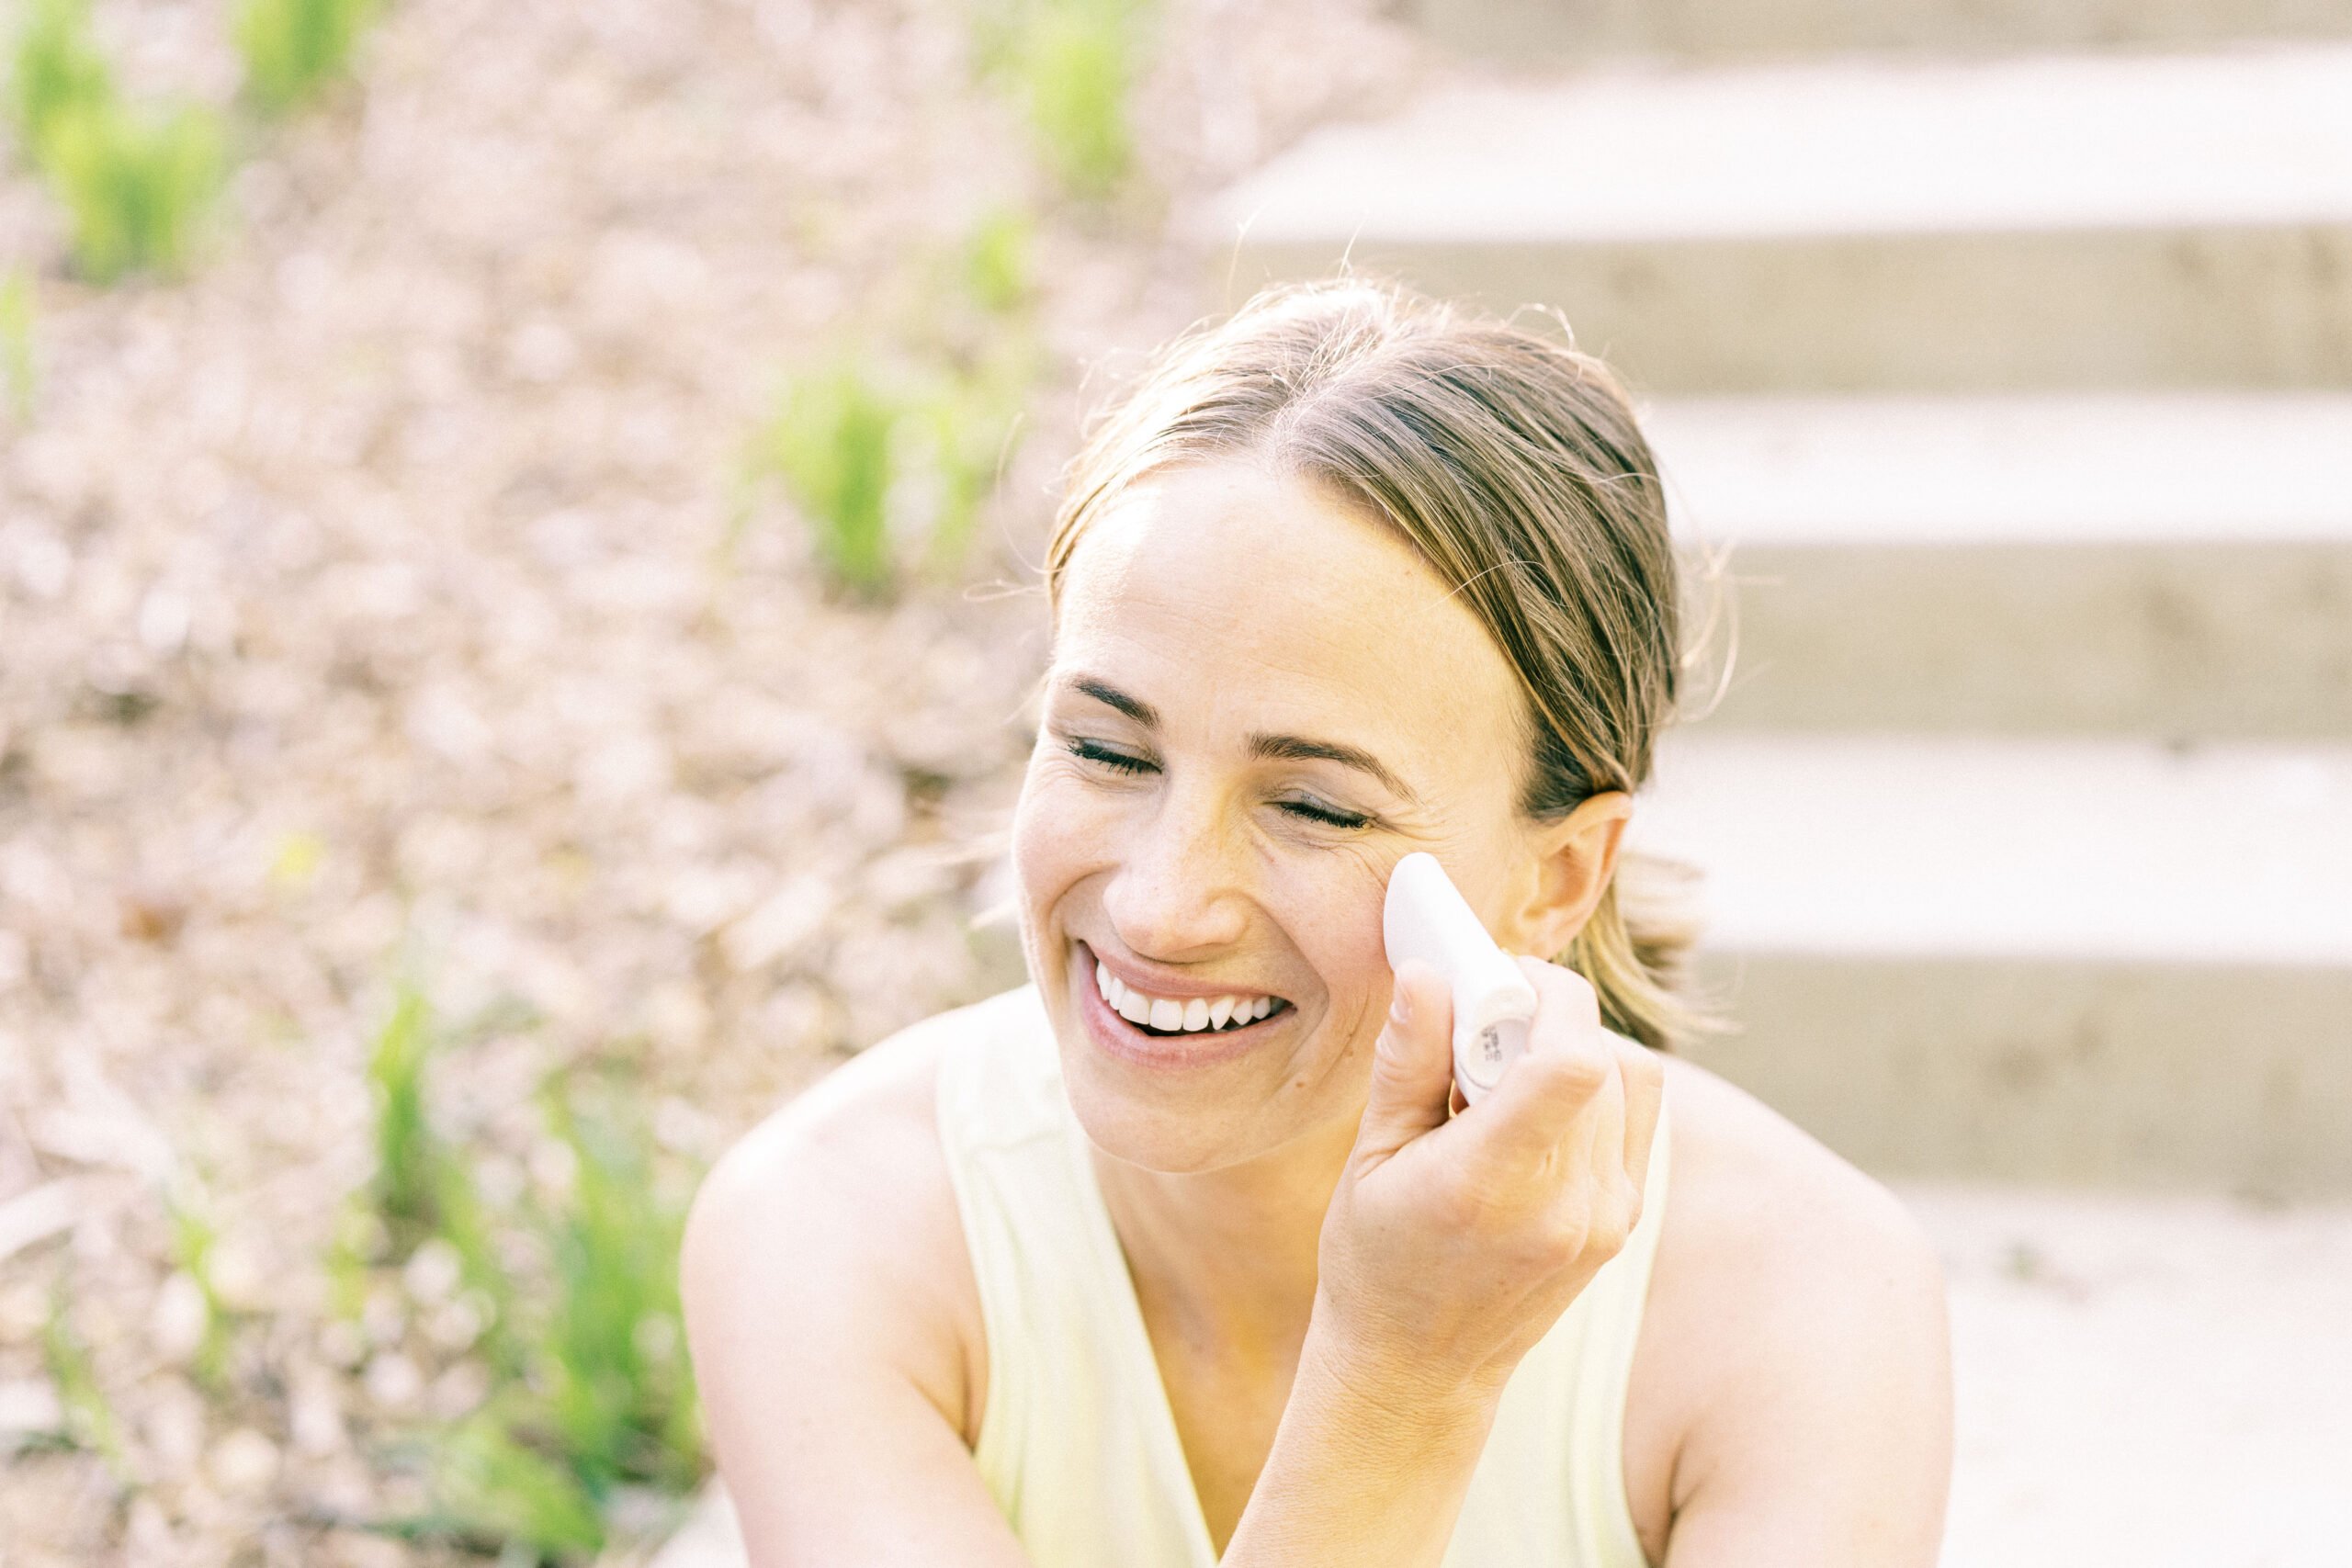 sunscreen stick US | Beautycounter Sunscreen Review